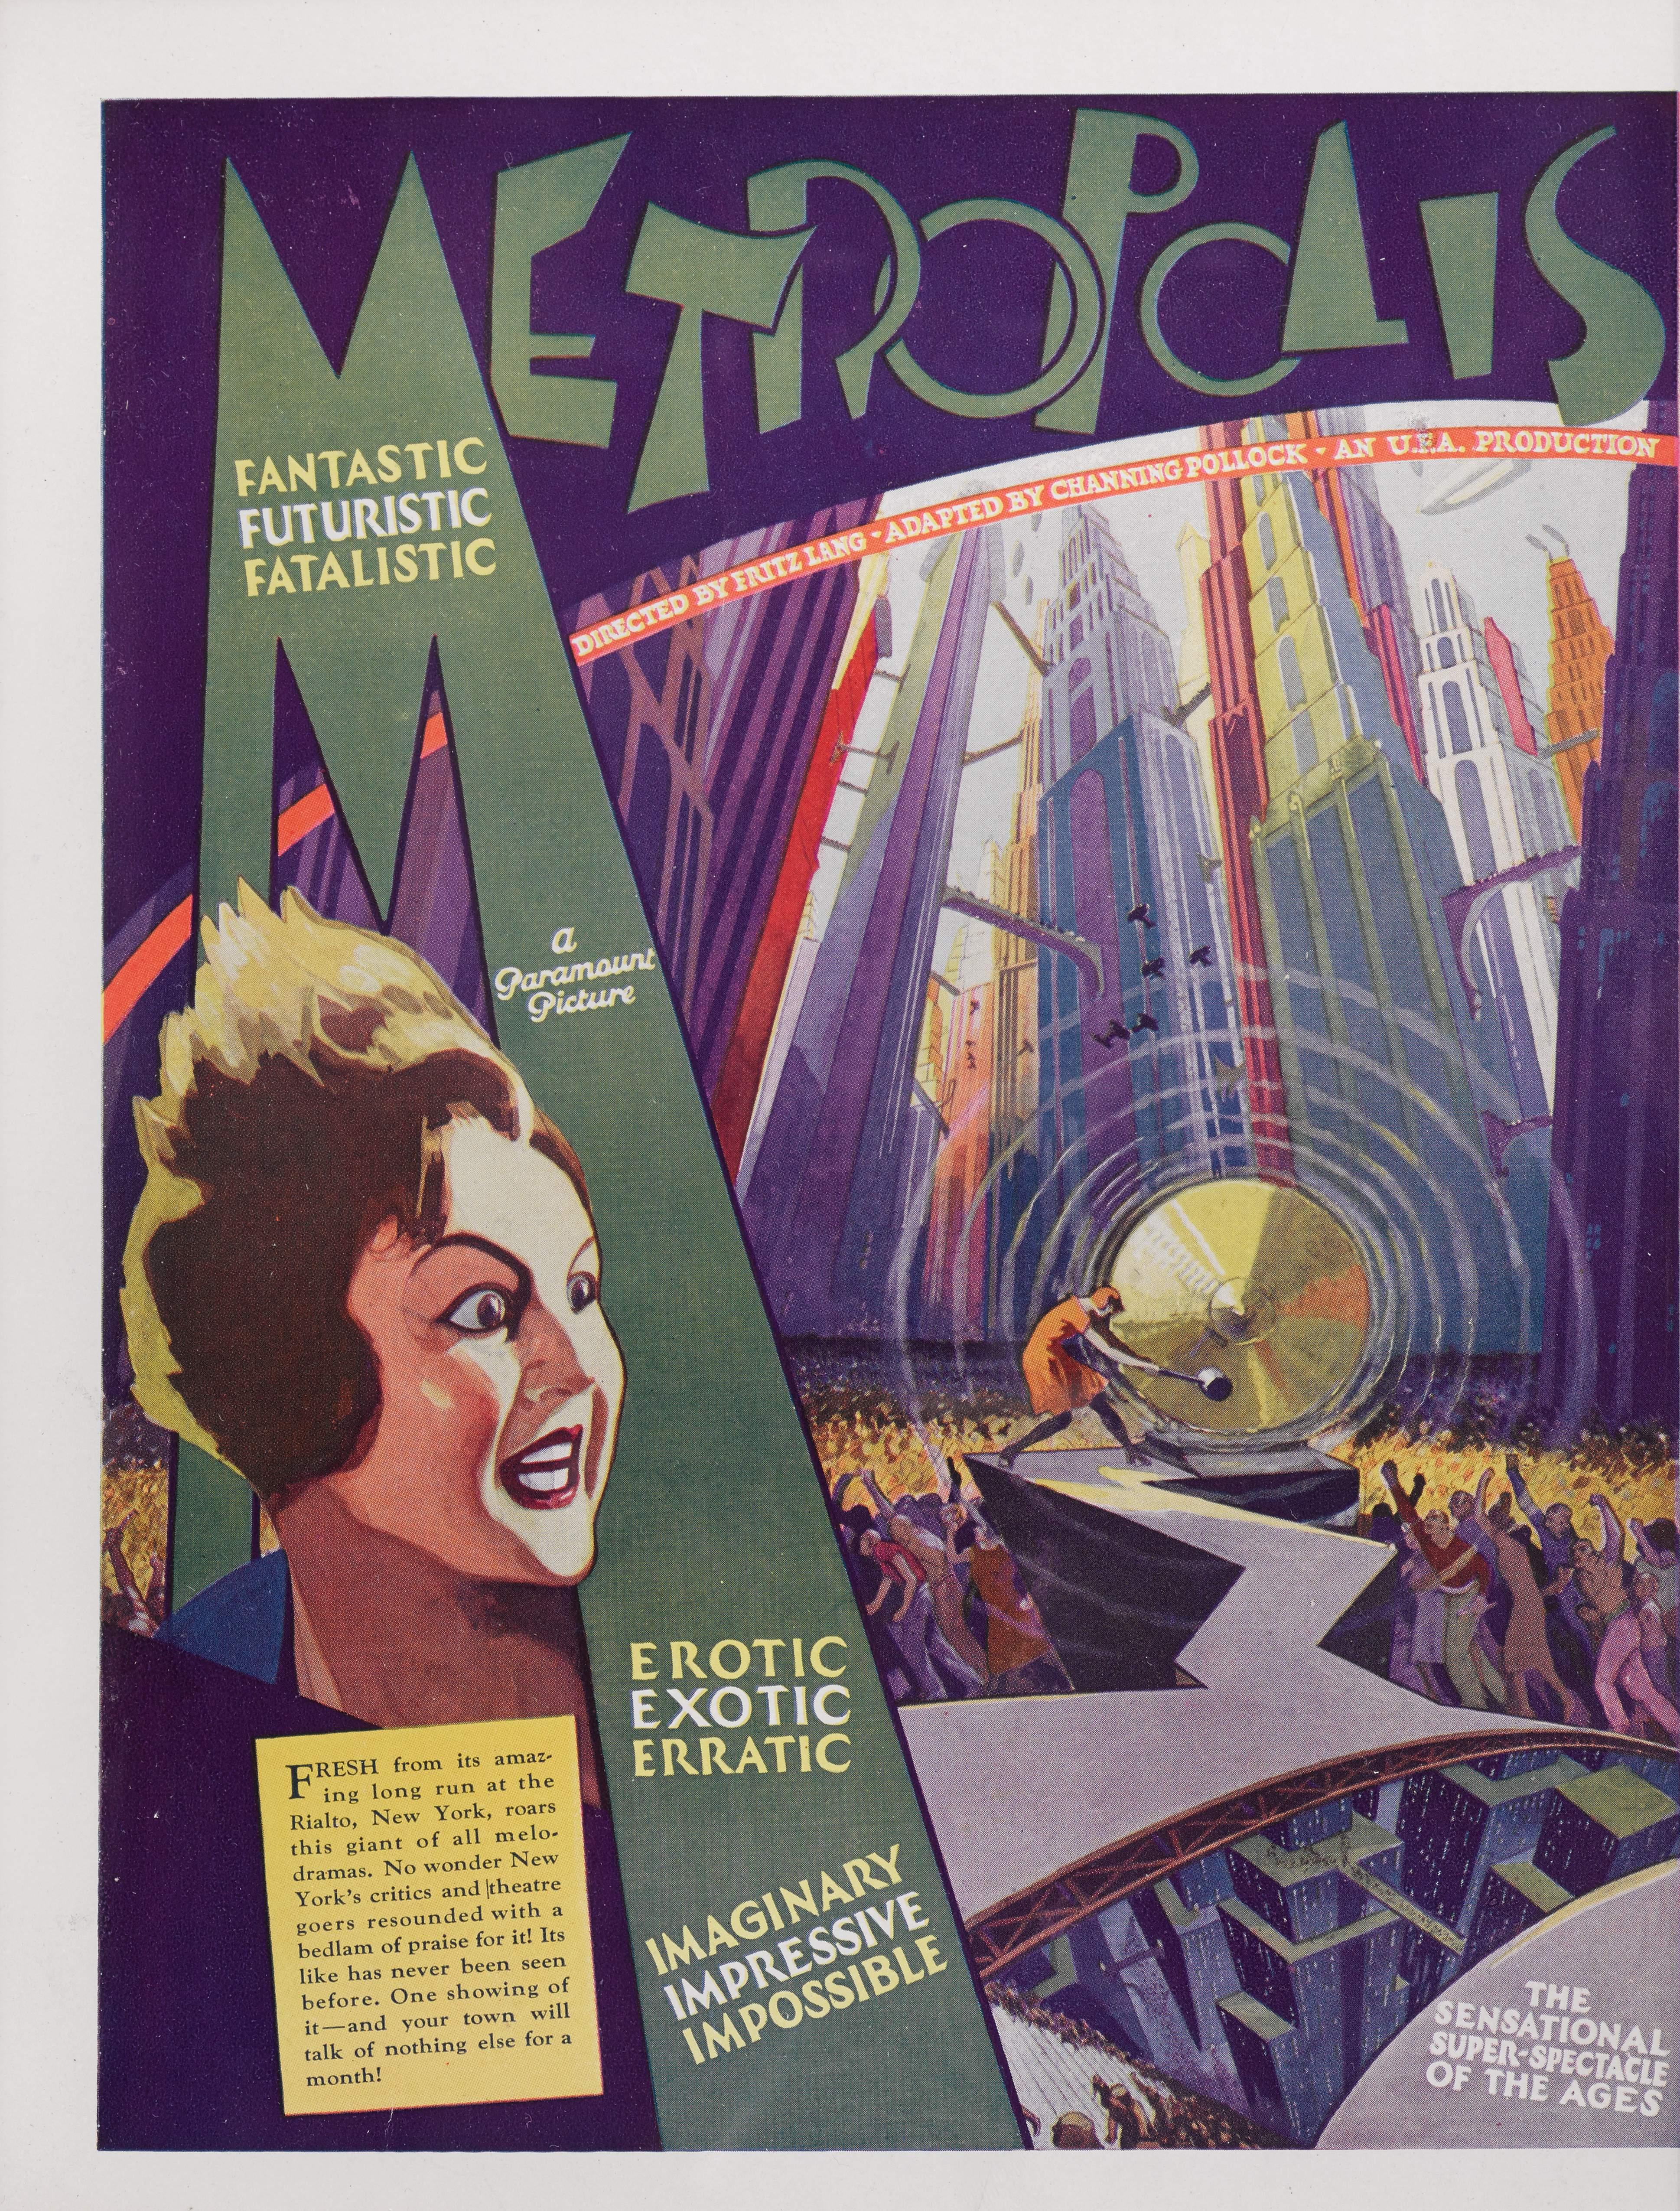 Original US-Werbung für Fritz Langs und Thea von Harbous Science-Fiction-Meisterwerk von 1927.
Channing Pollock, ein amerikanischer Dramatiker und Kritiker der Washington Post, wurde beauftragt, den Film für ein amerikanisches Publikum attraktiv zu